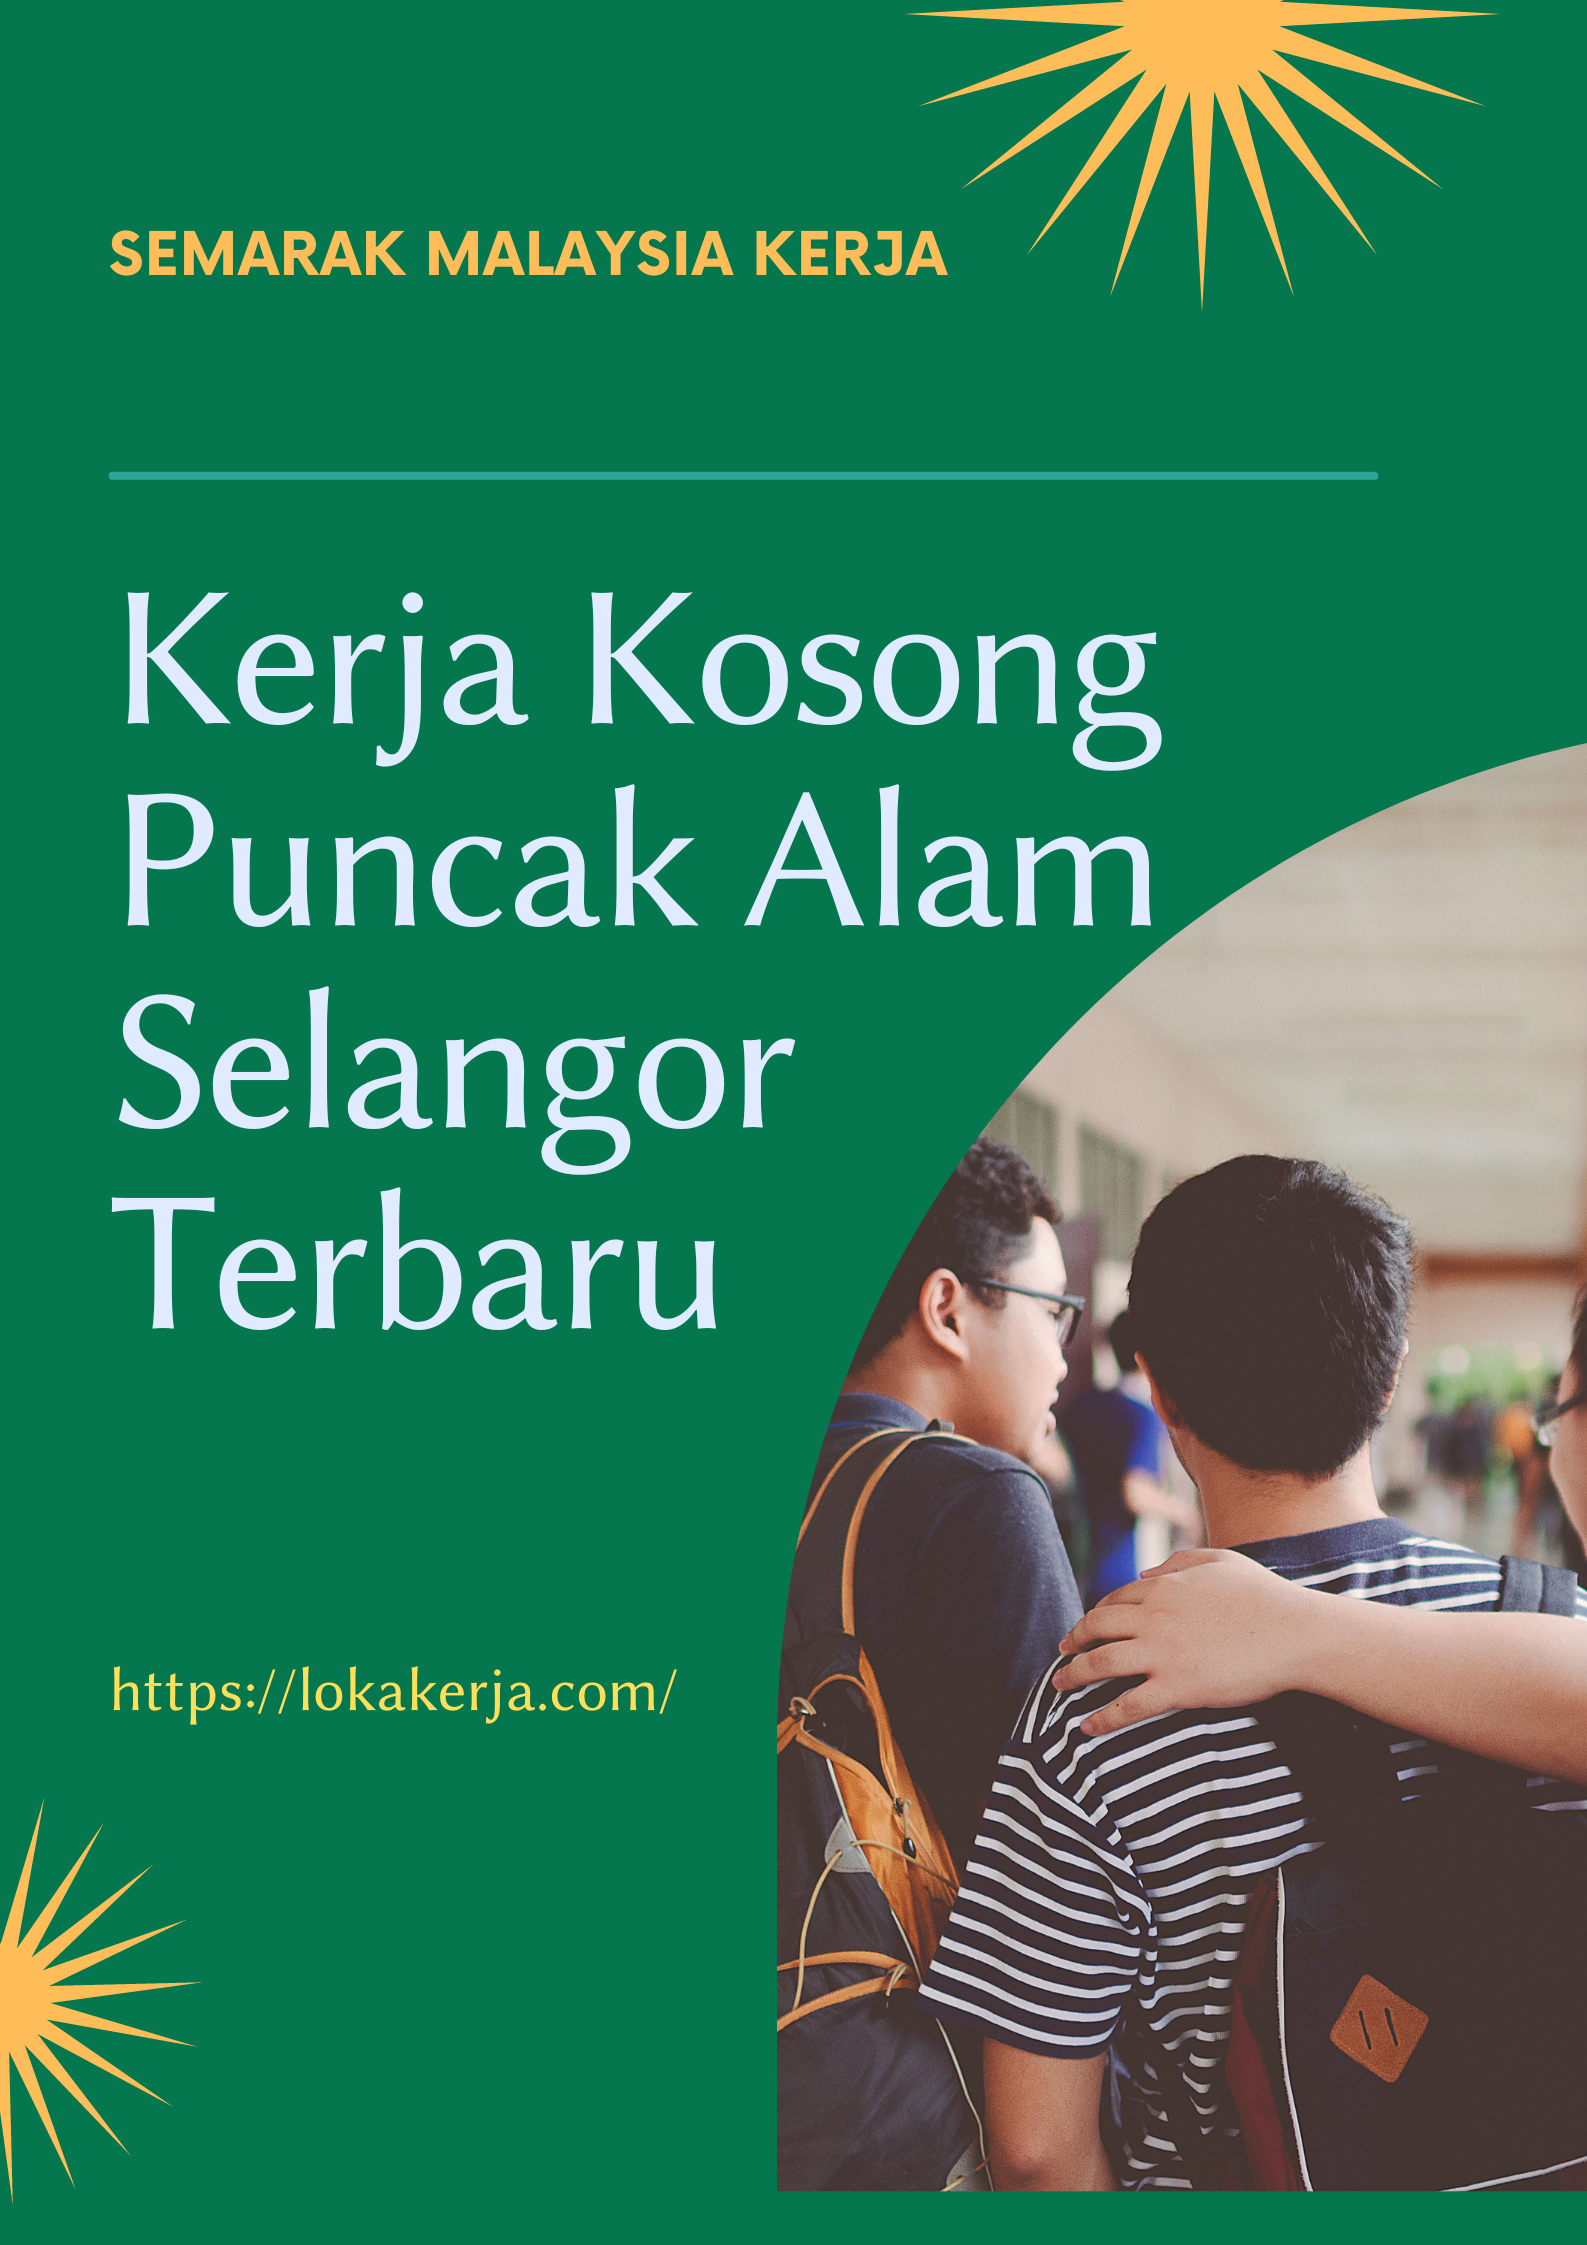 Kerja Kosong Puncak Alam Selangor Terbaru